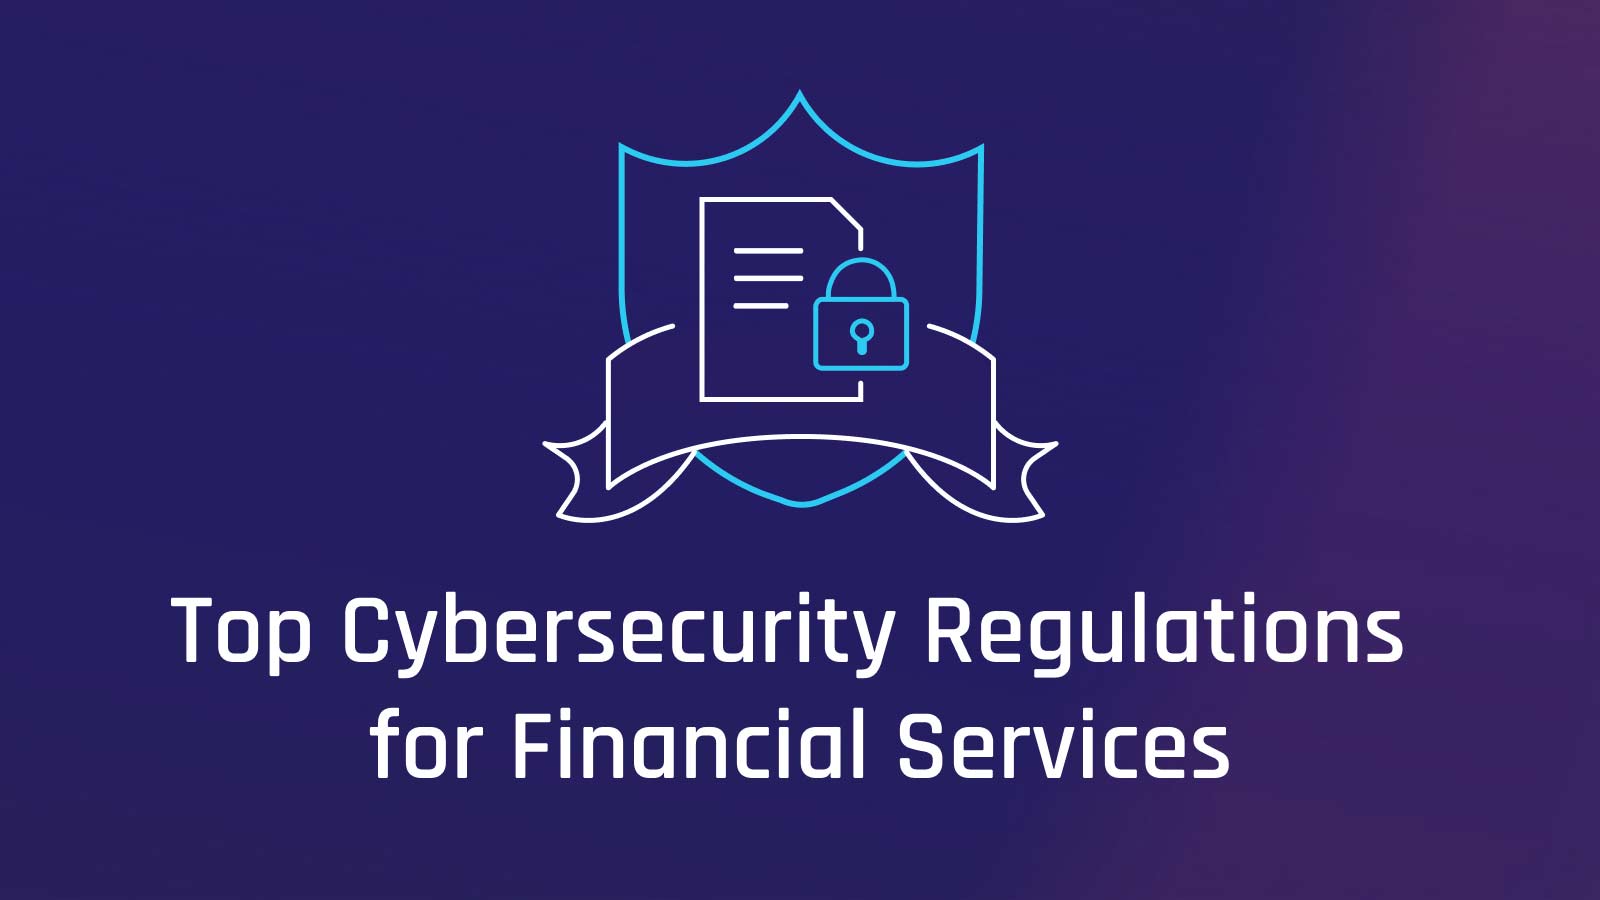 Top Financial Cybersecurity Regulations